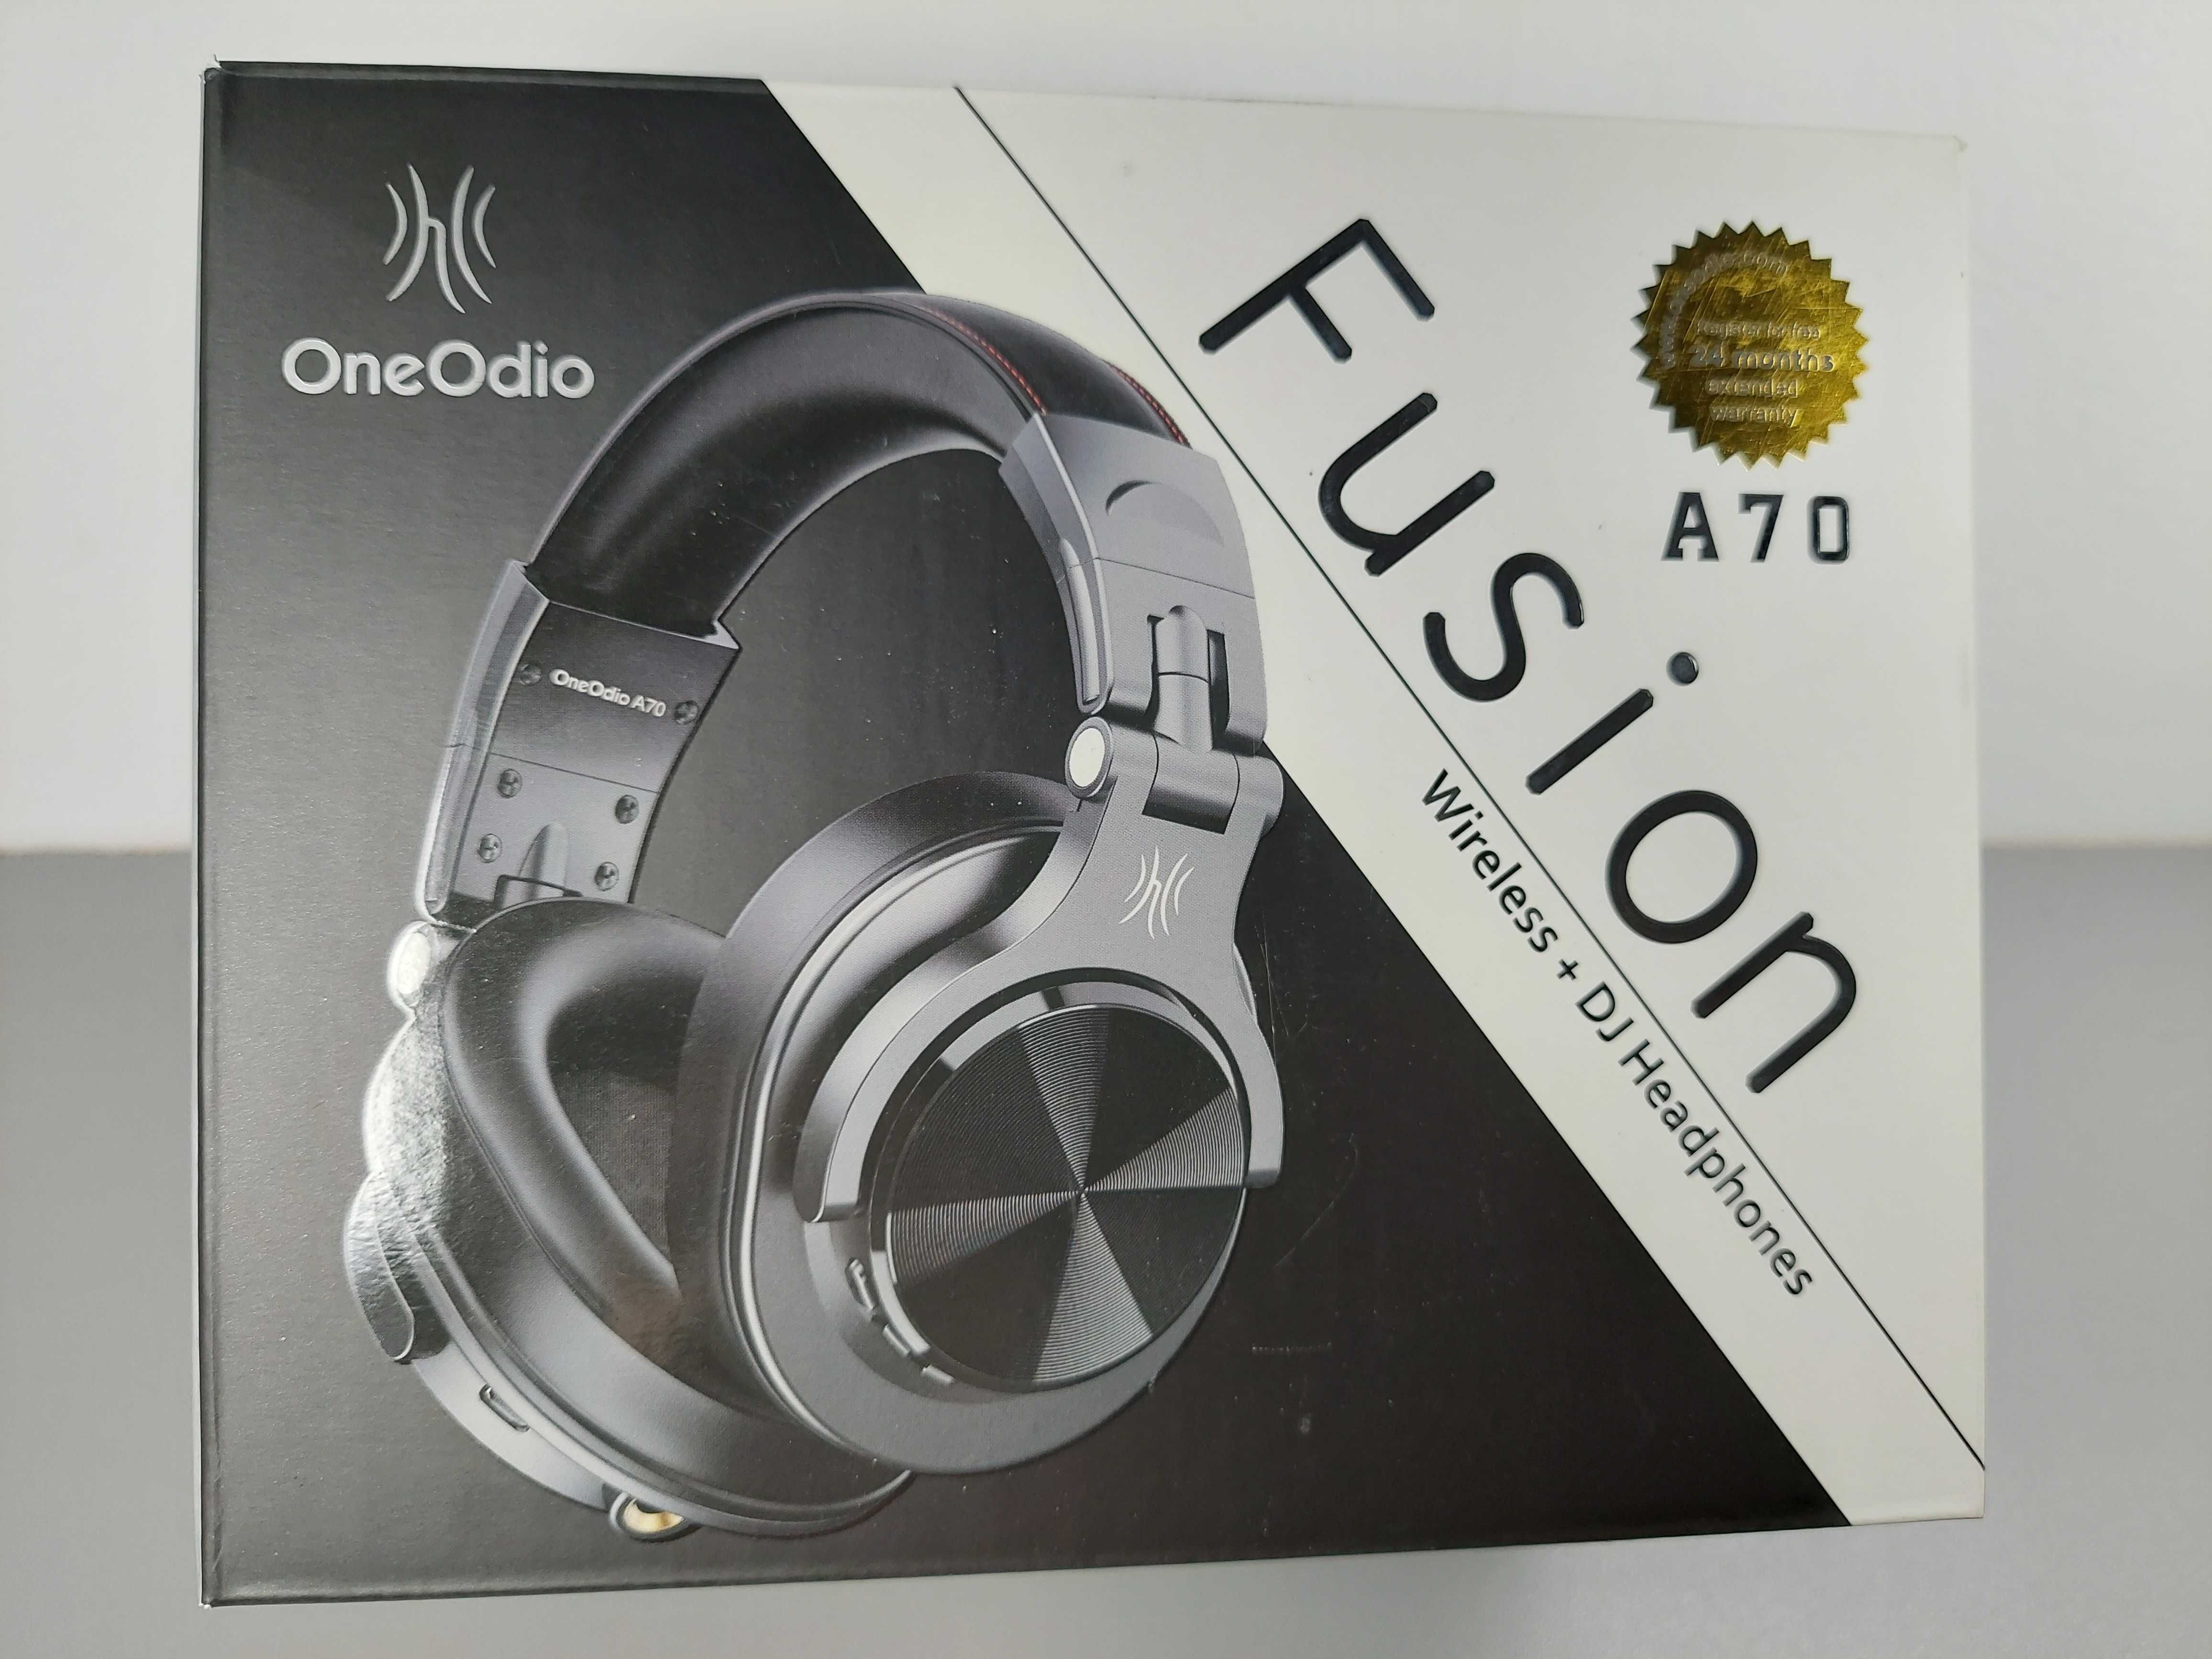 Oneodido Fusion A70 słuchawki bezprzewodowe nauszne